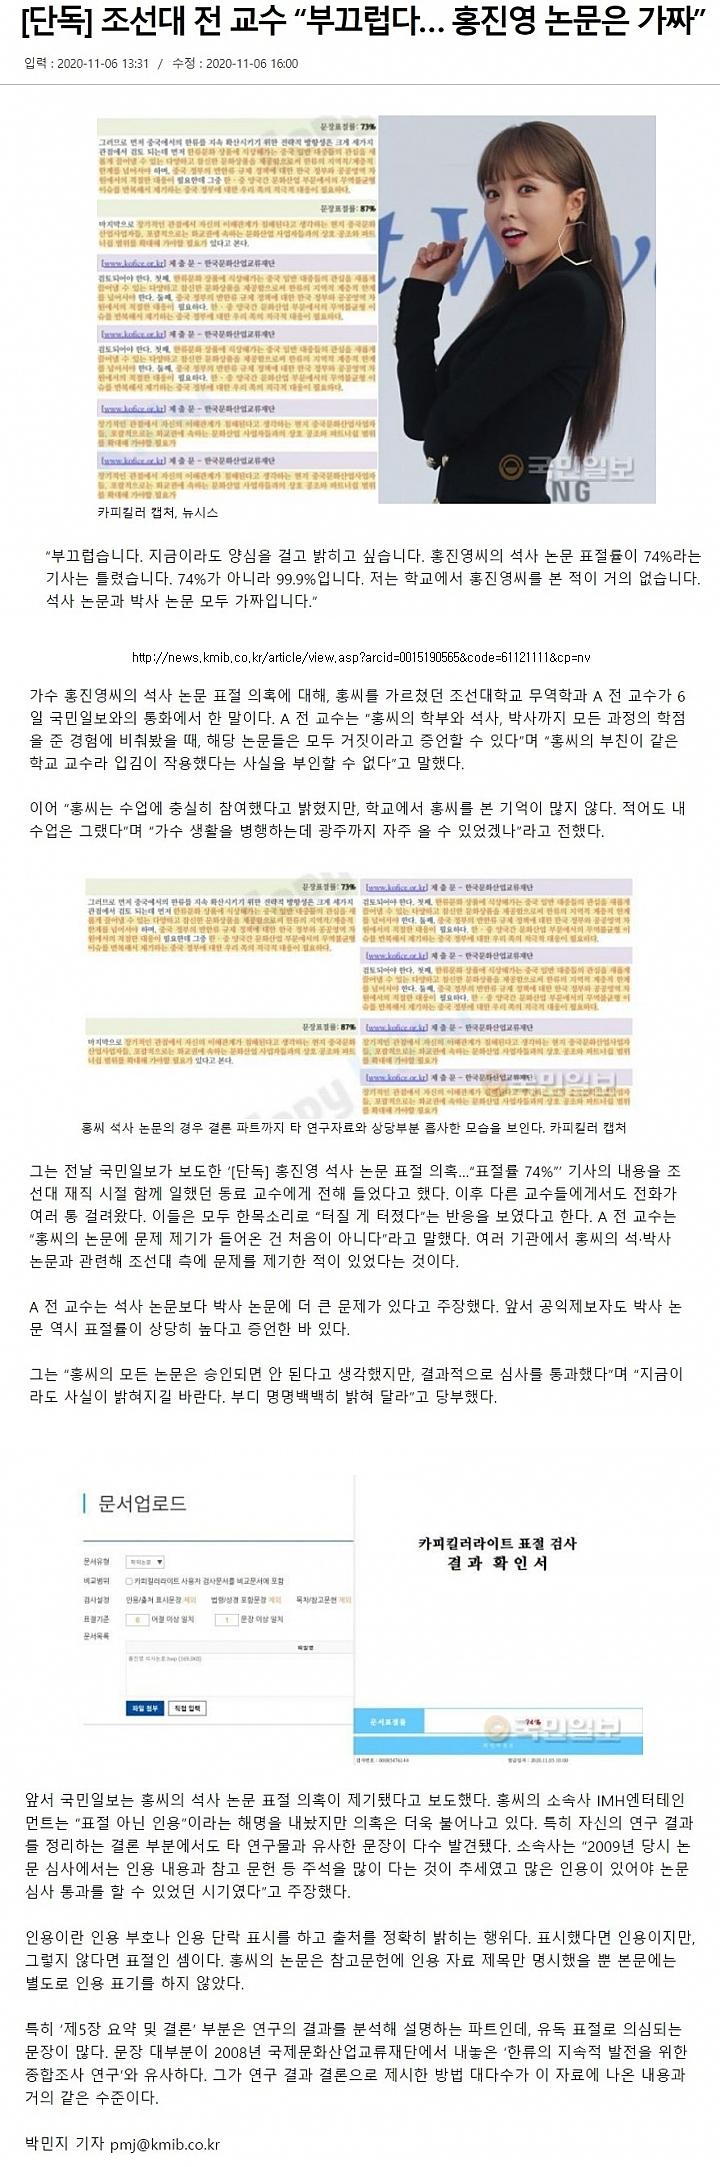 홍진영 논문은 가짜.jpg